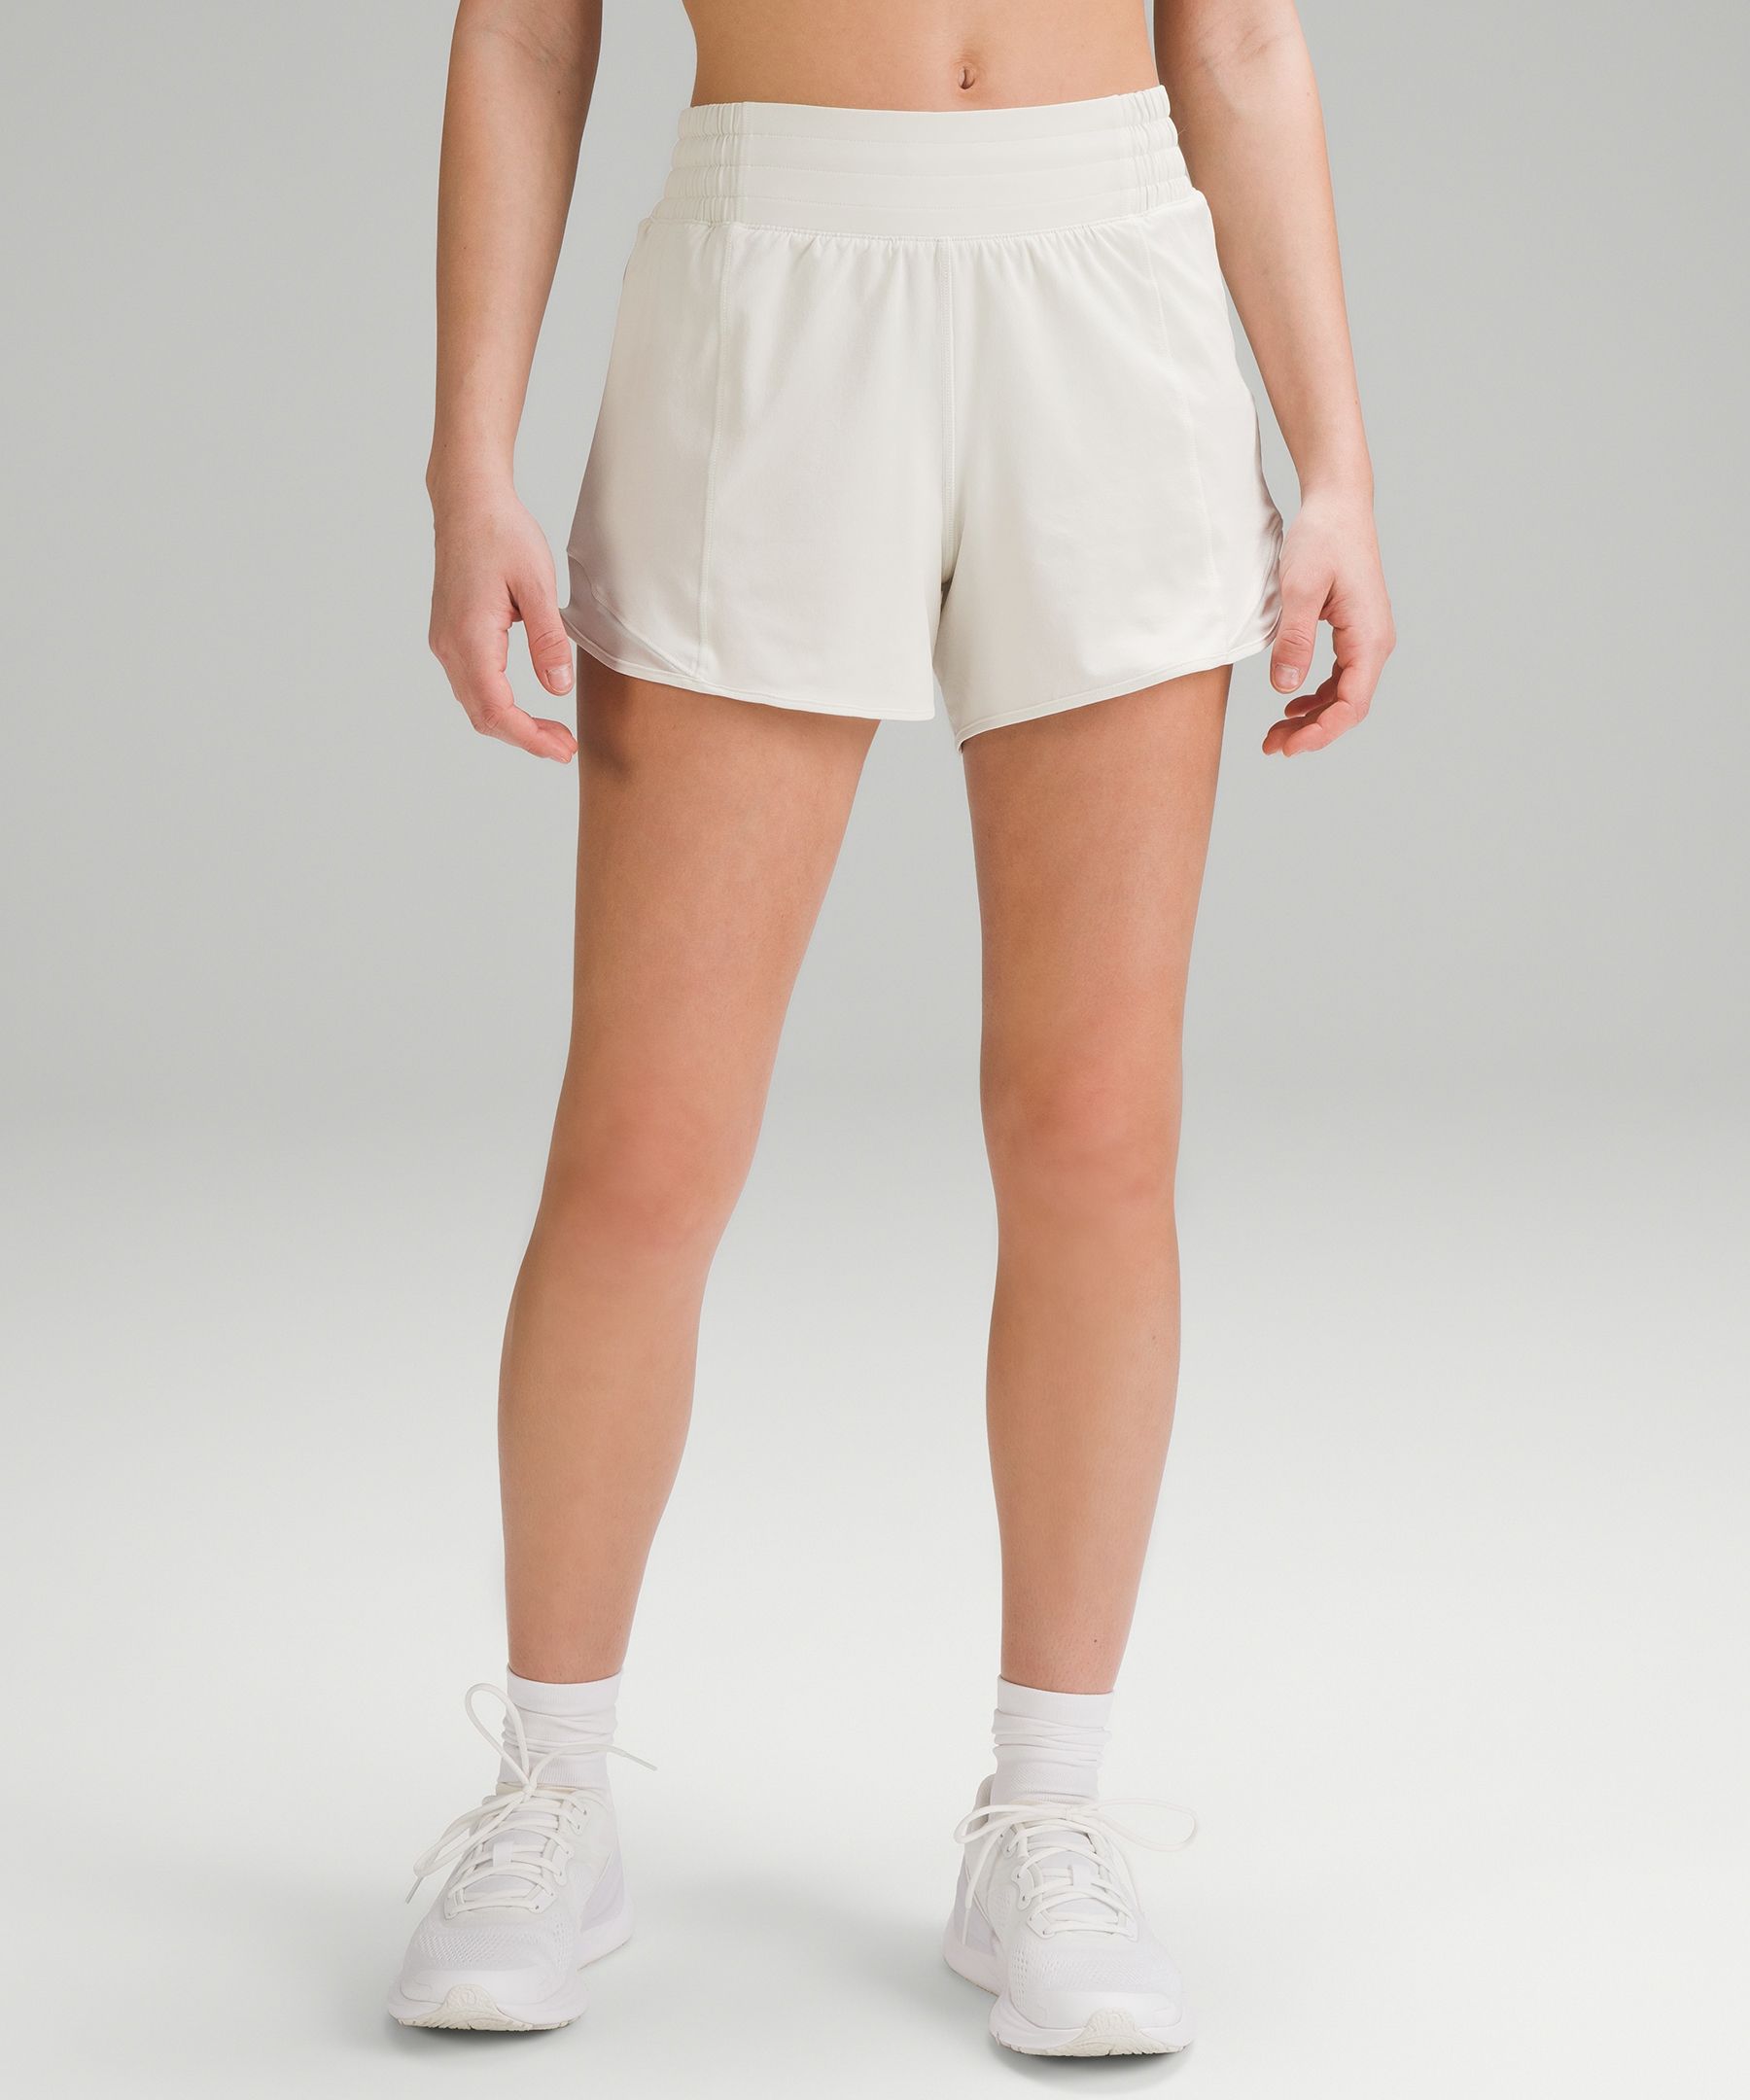 Lululemon Hotty Hot High-rise Lined Shorts 4